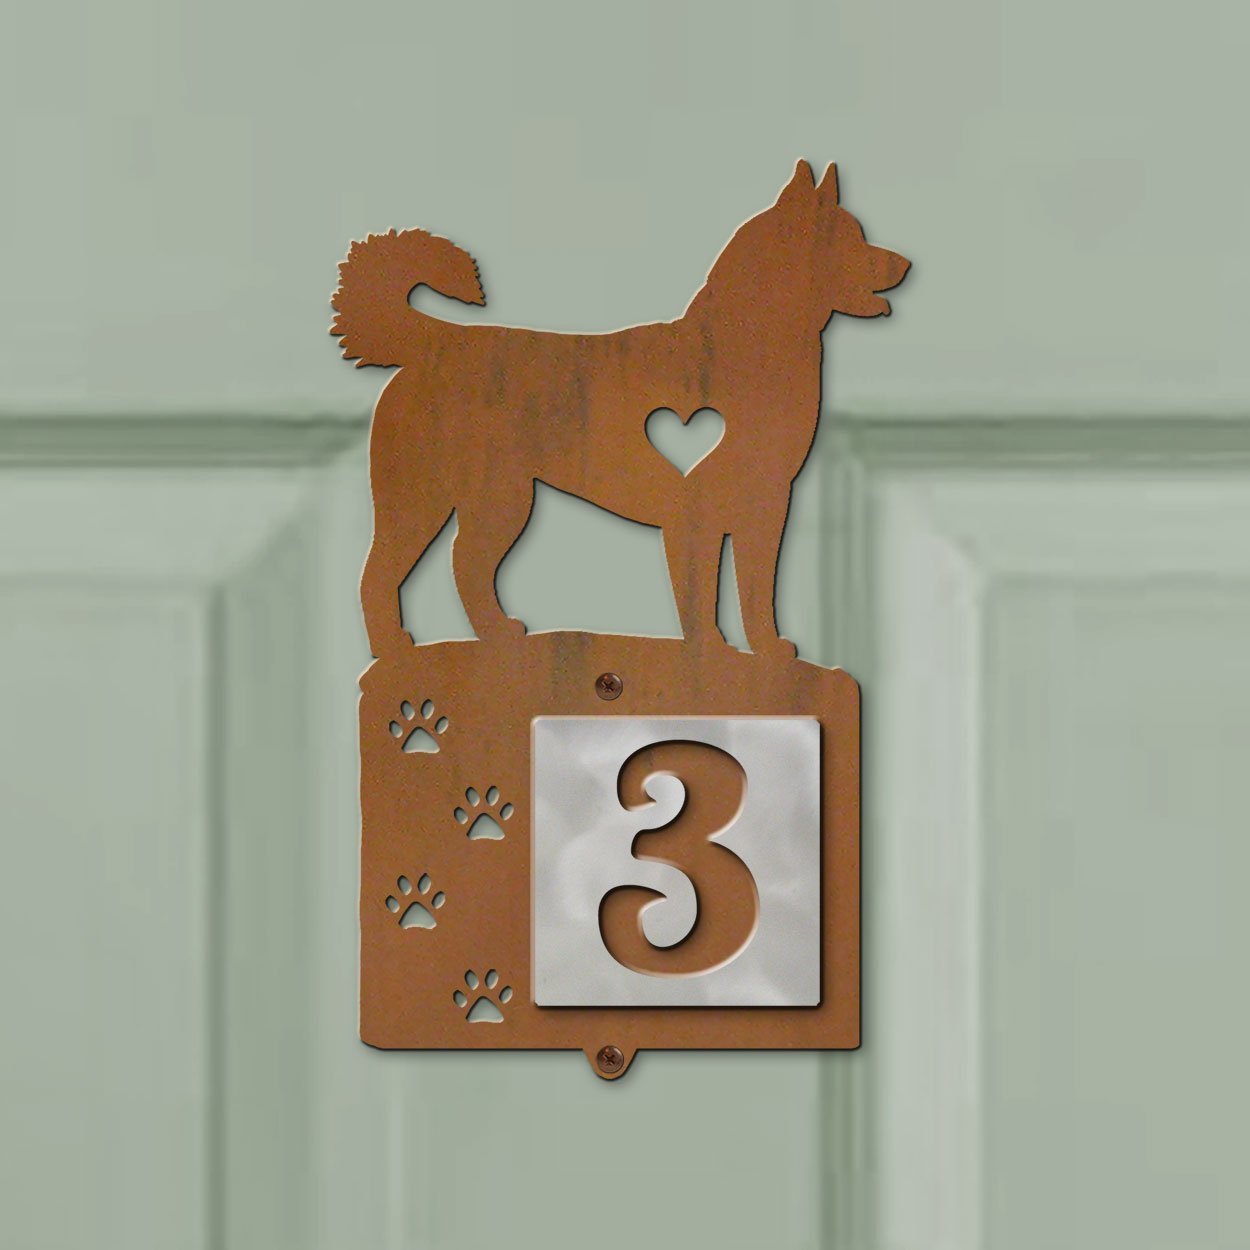 606241 - Husky Nose Prints One-Digit Rustic Tile Door Number